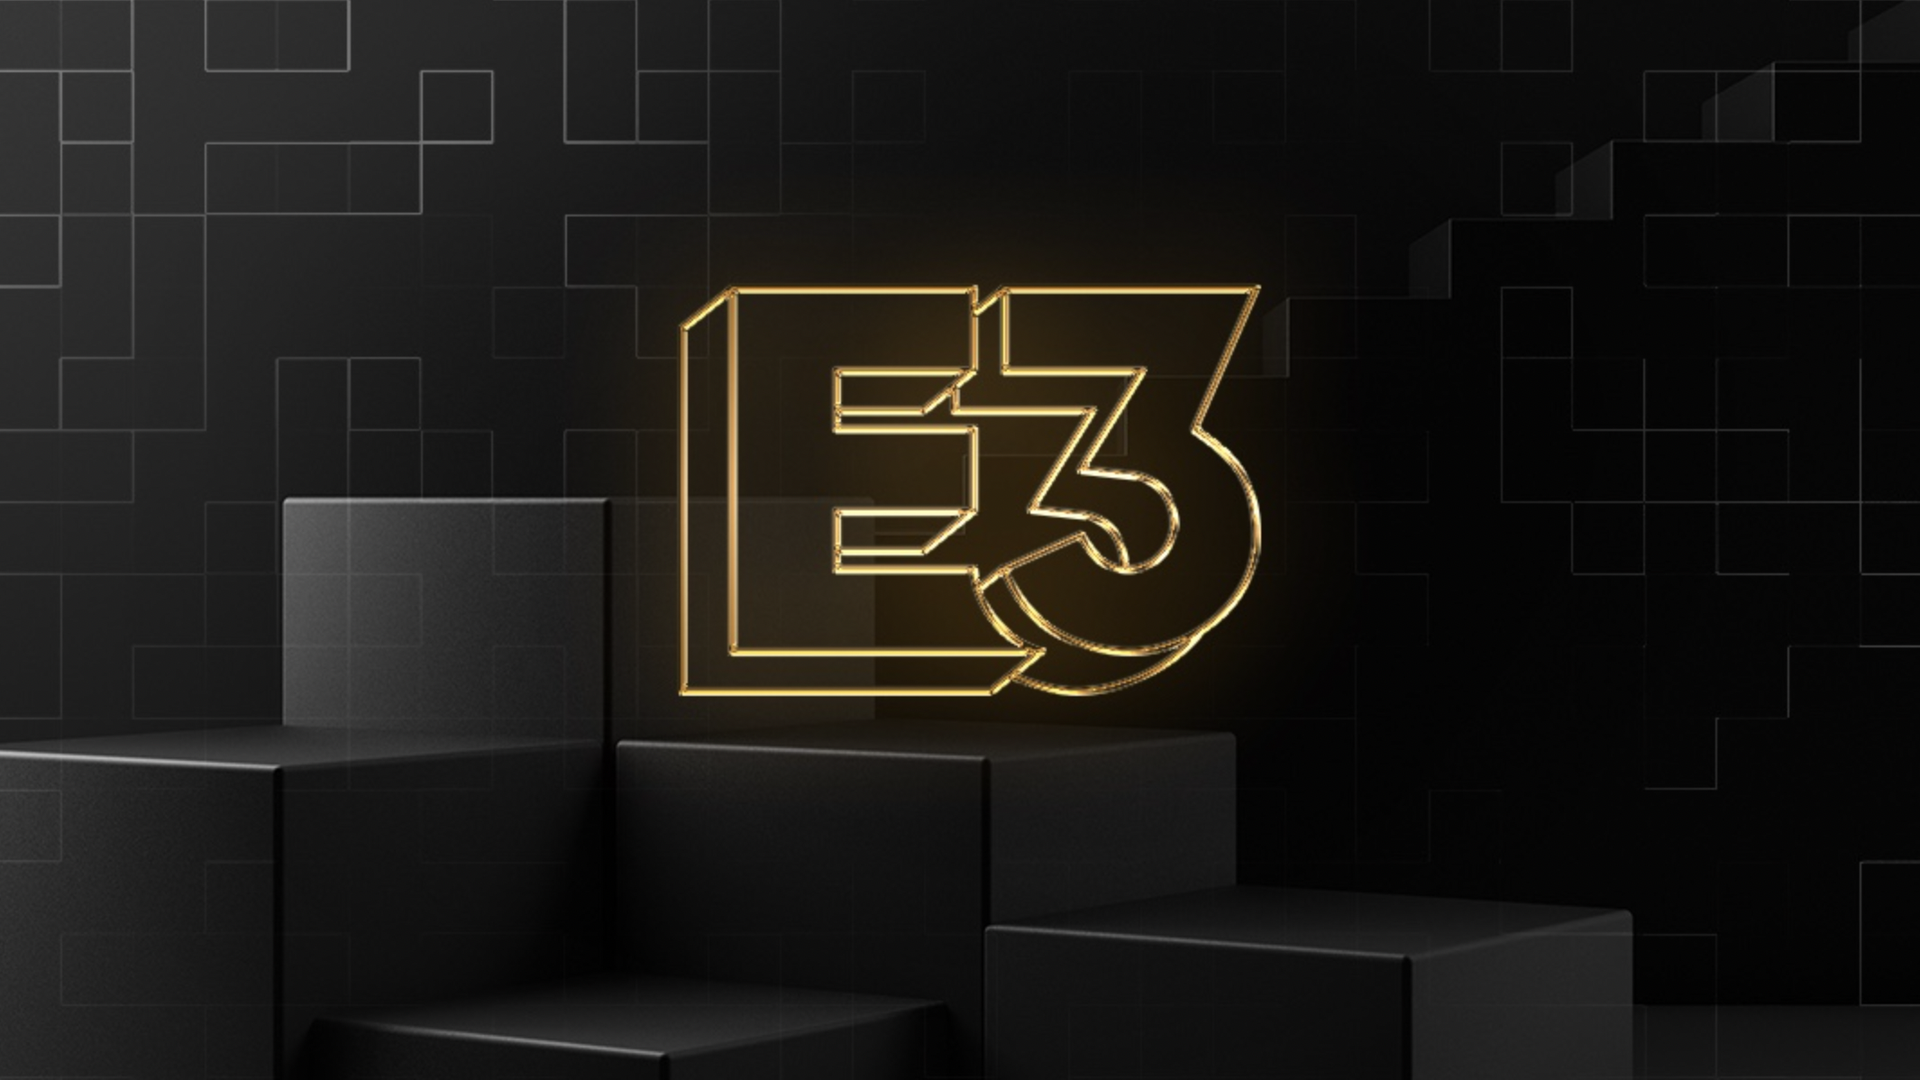 The E3 logo